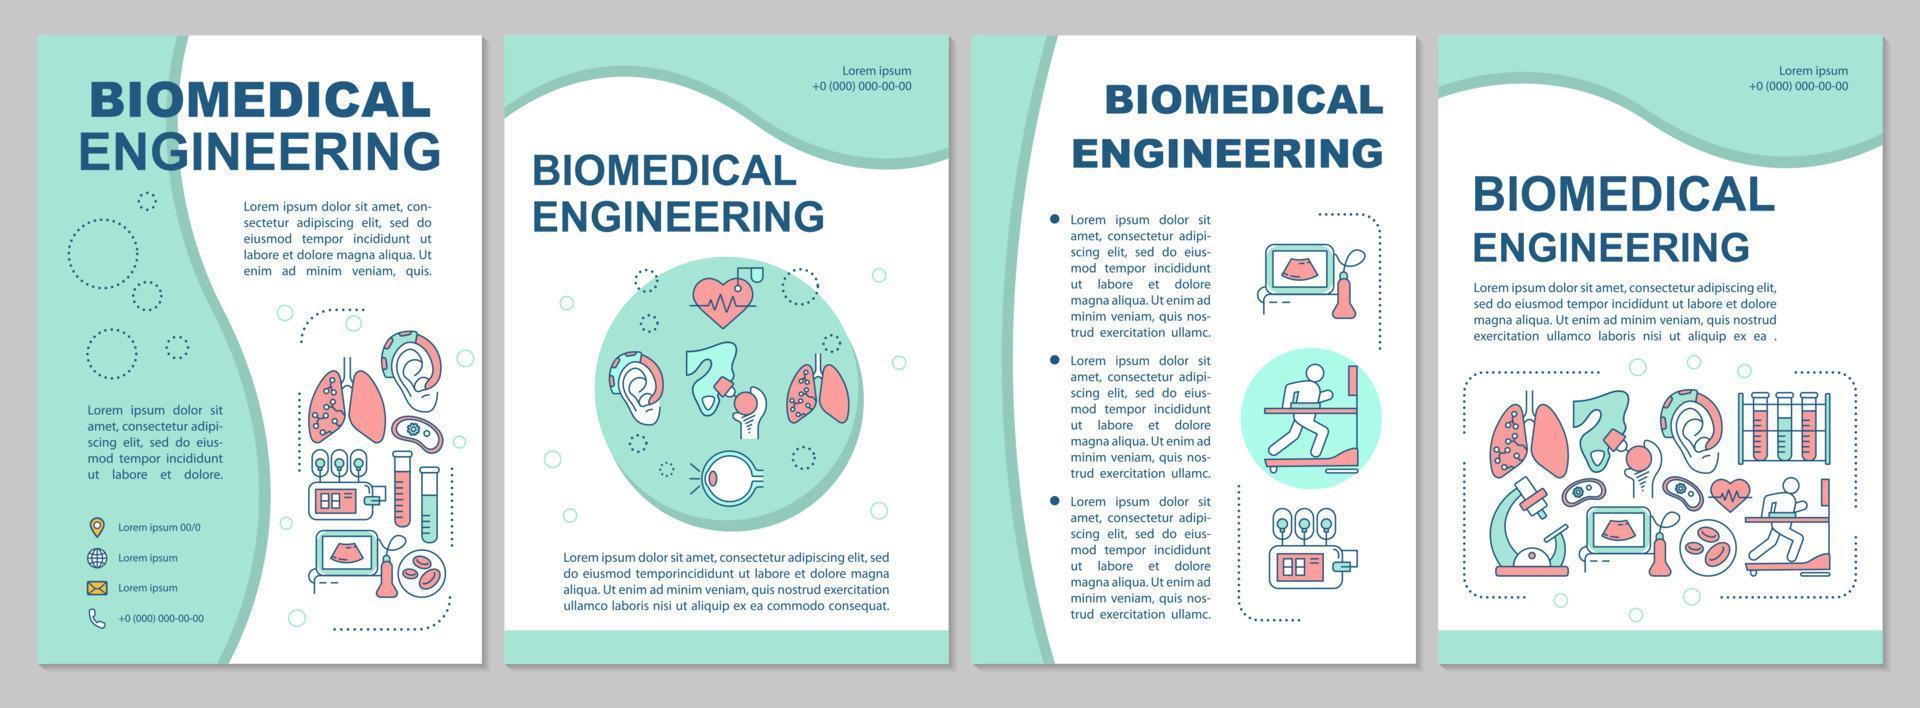 mall för broschyr för biomedicinsk teknik. flygblad, häfte, broschyrtryck, omslagsdesign med linjära illustrationer. innovativa tekniker. vektor sidlayouter för årsredovisningar, reklamaffischer